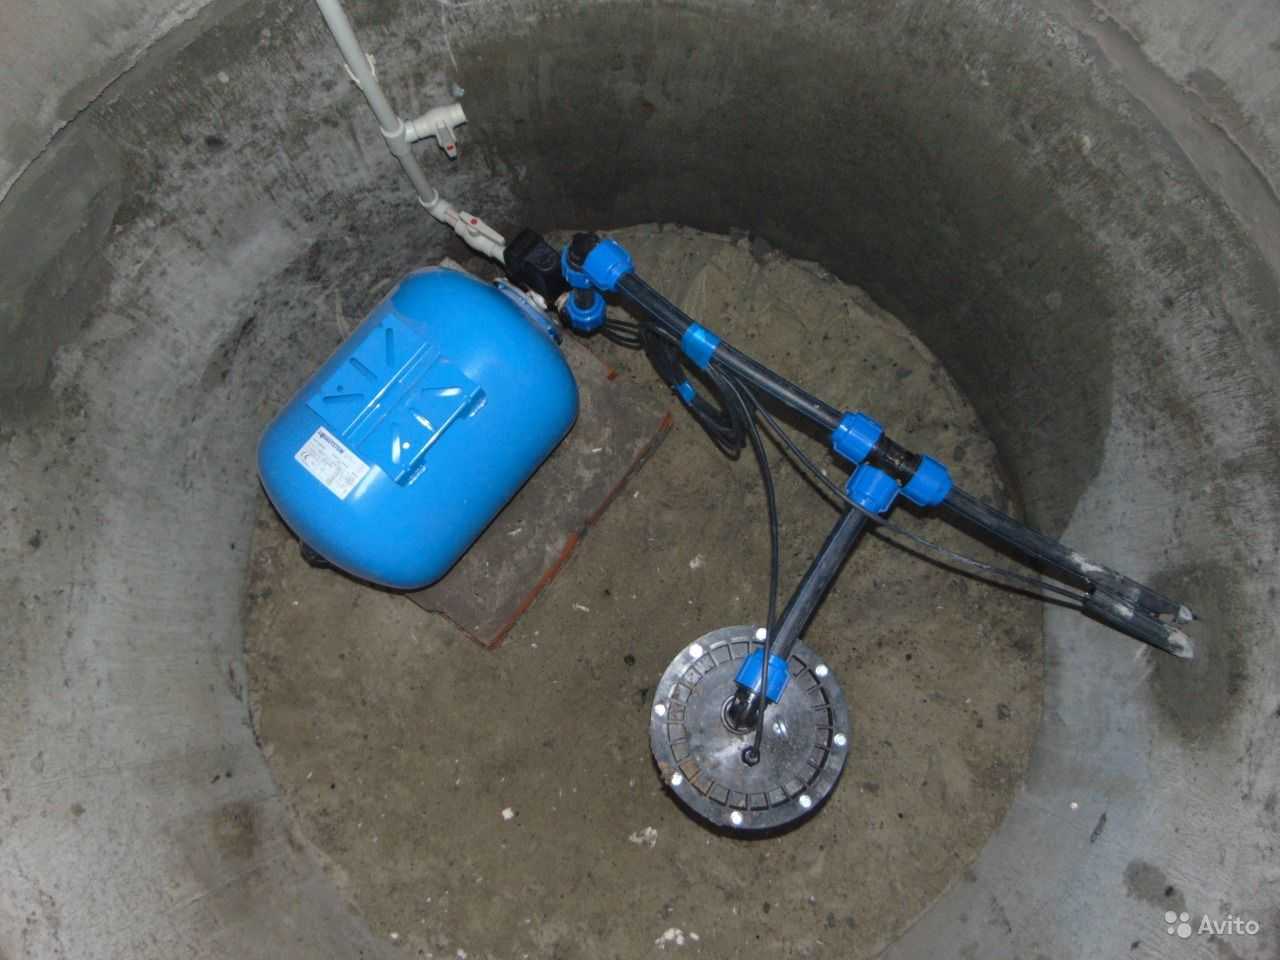 Обустройство скважины для воды. кессон, адаптер, бетонные кольца